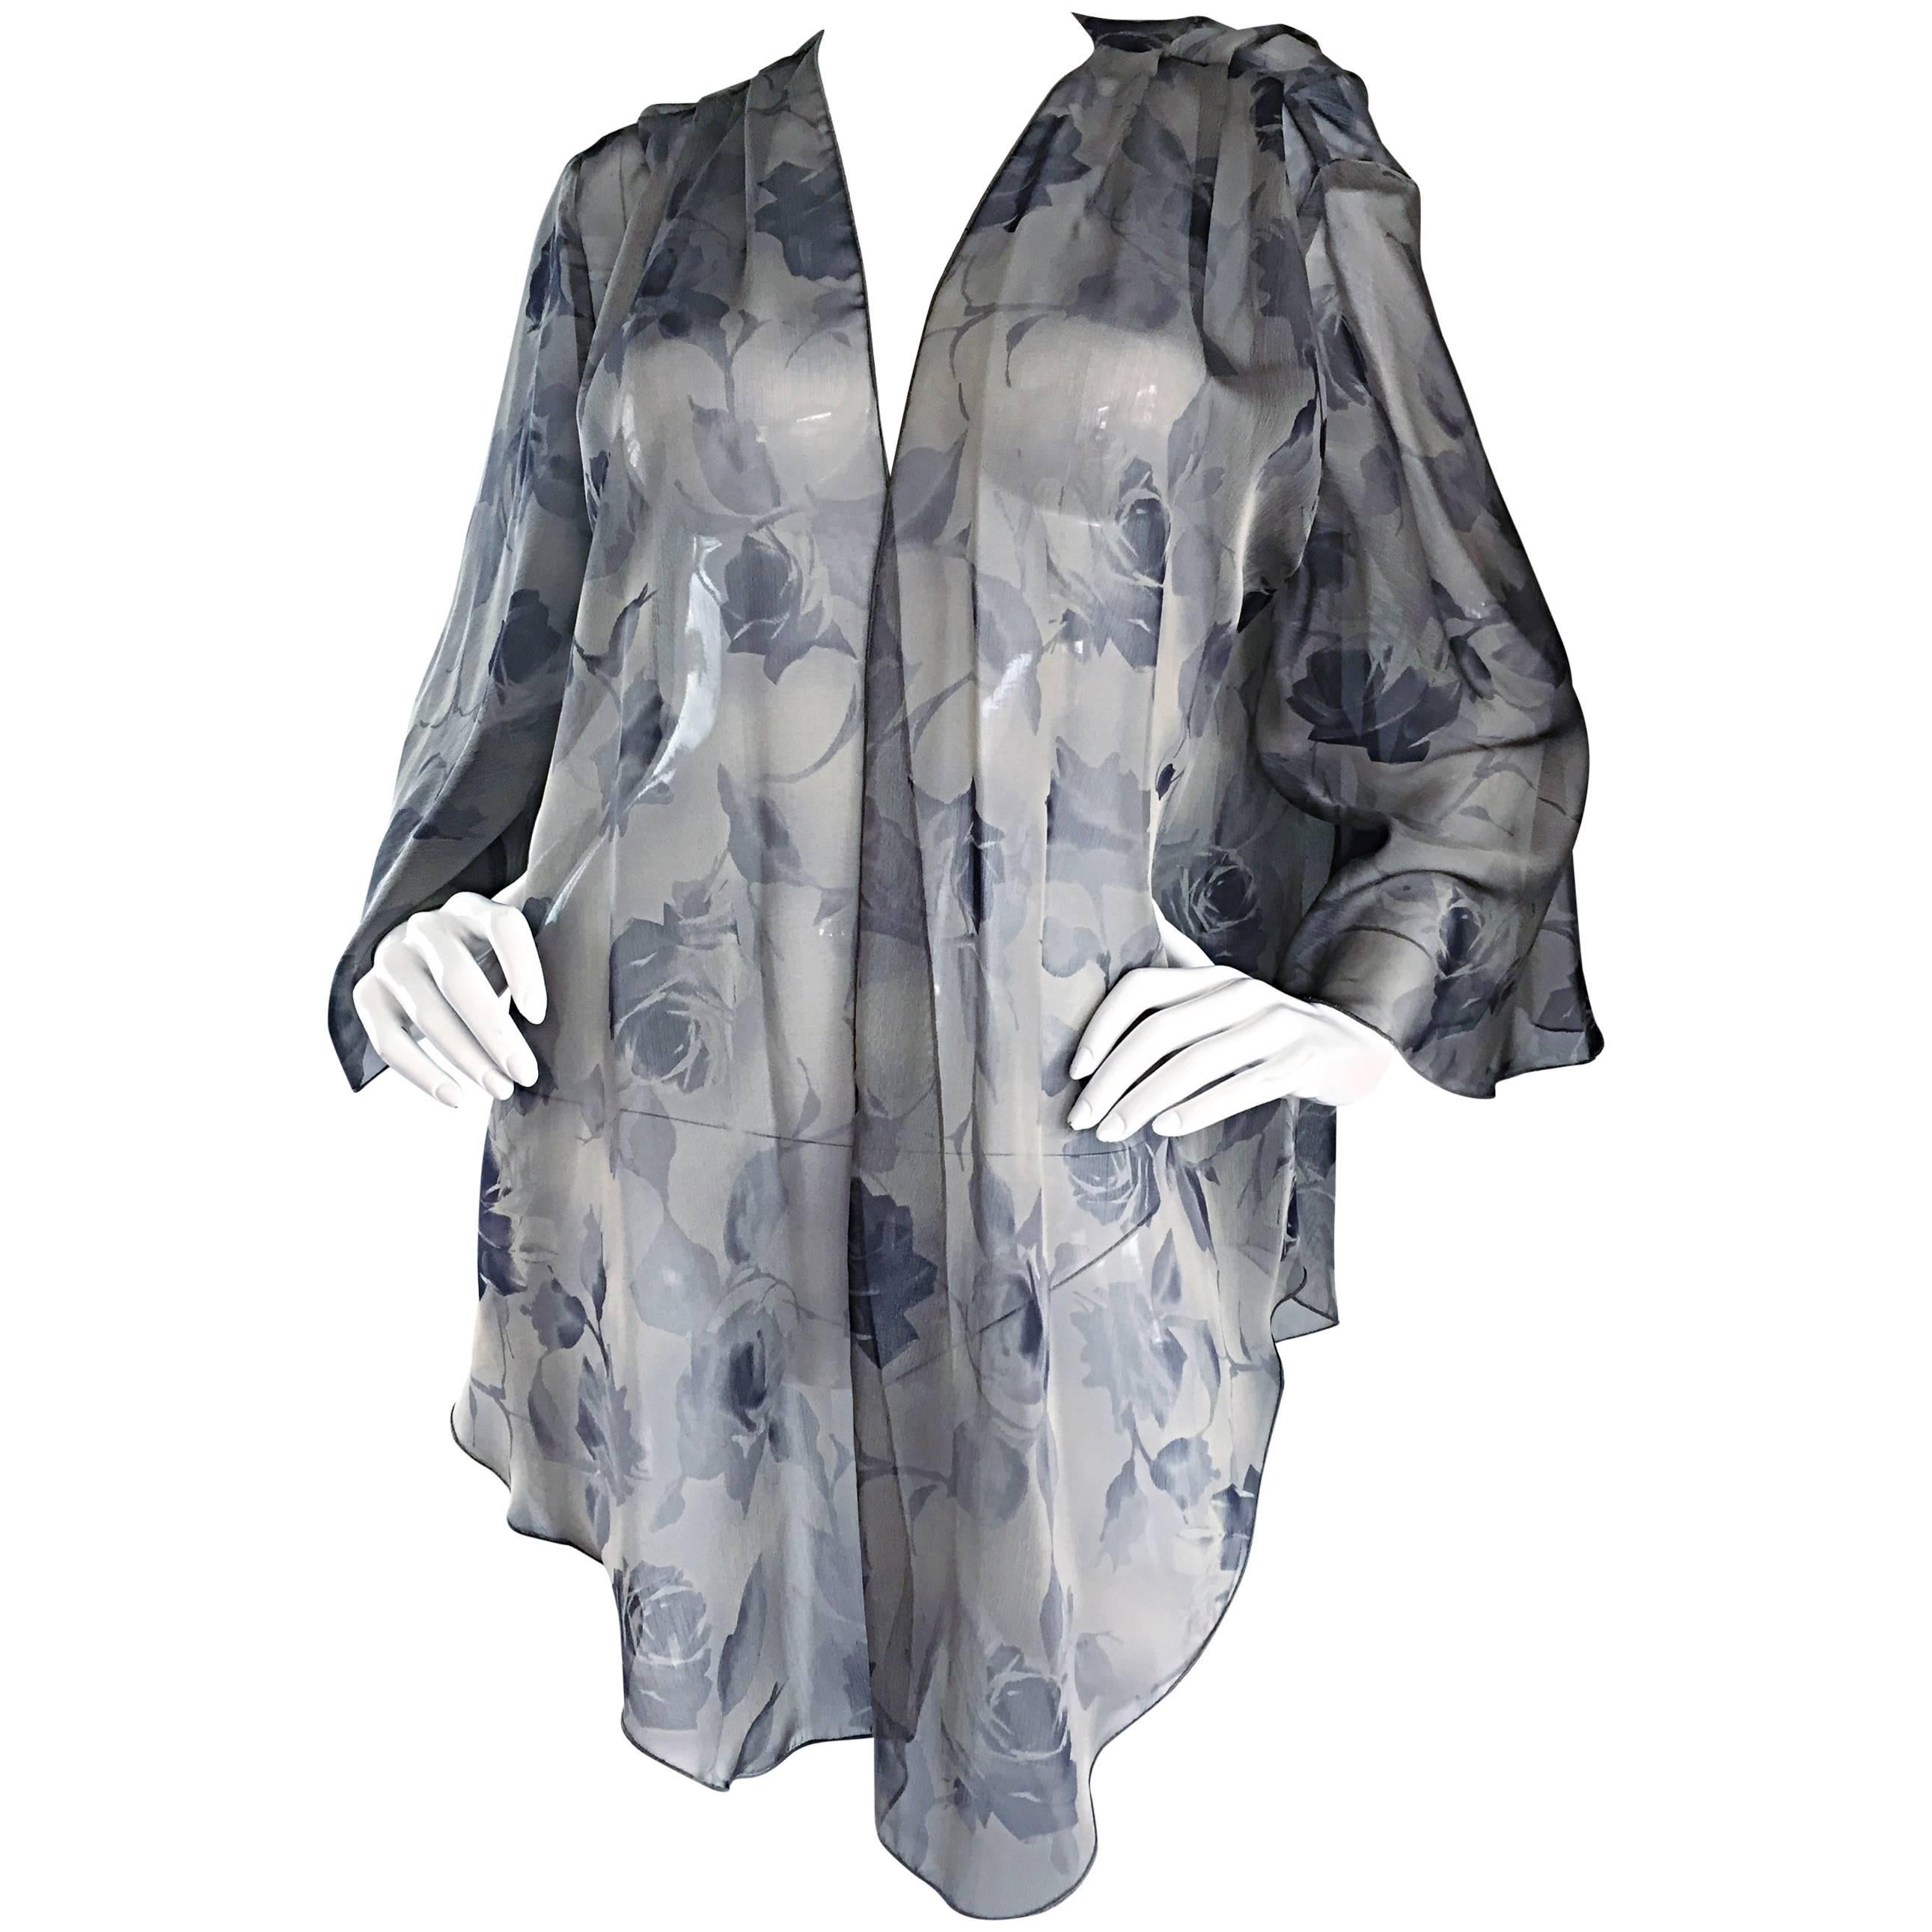 Bill Blass - Magnifique veste kimono vintage en mousseline de soie grise à imprimé rose, taille 14 